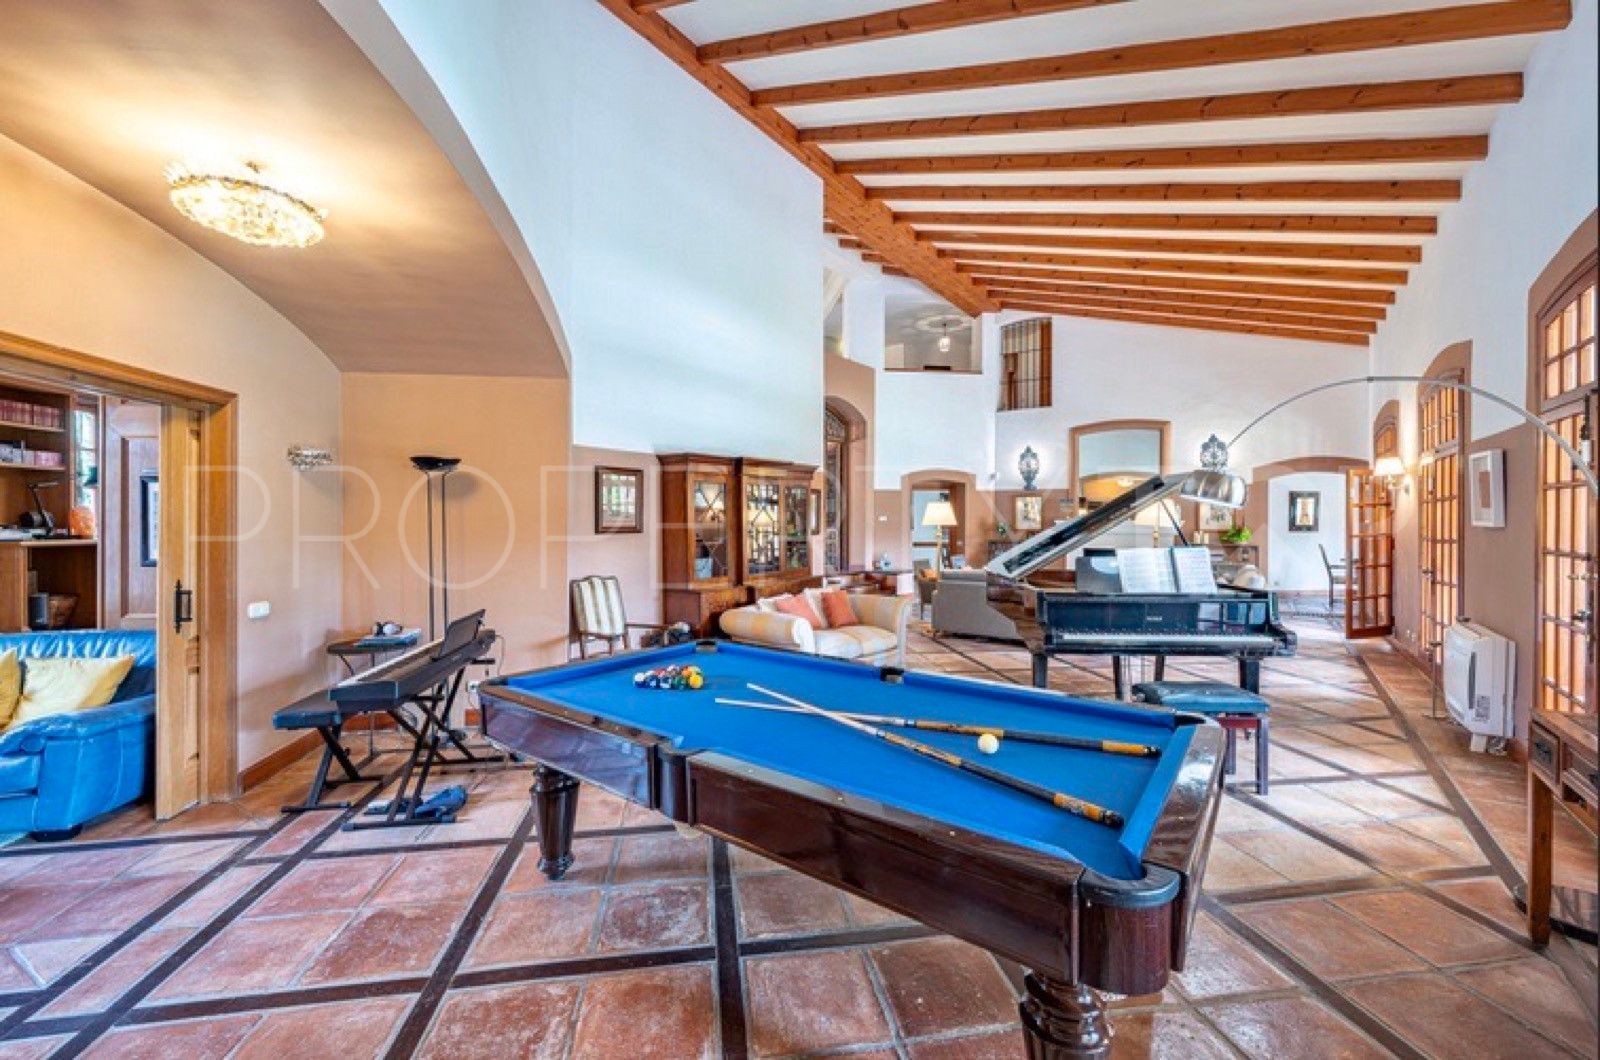 For sale villa in El Paraiso